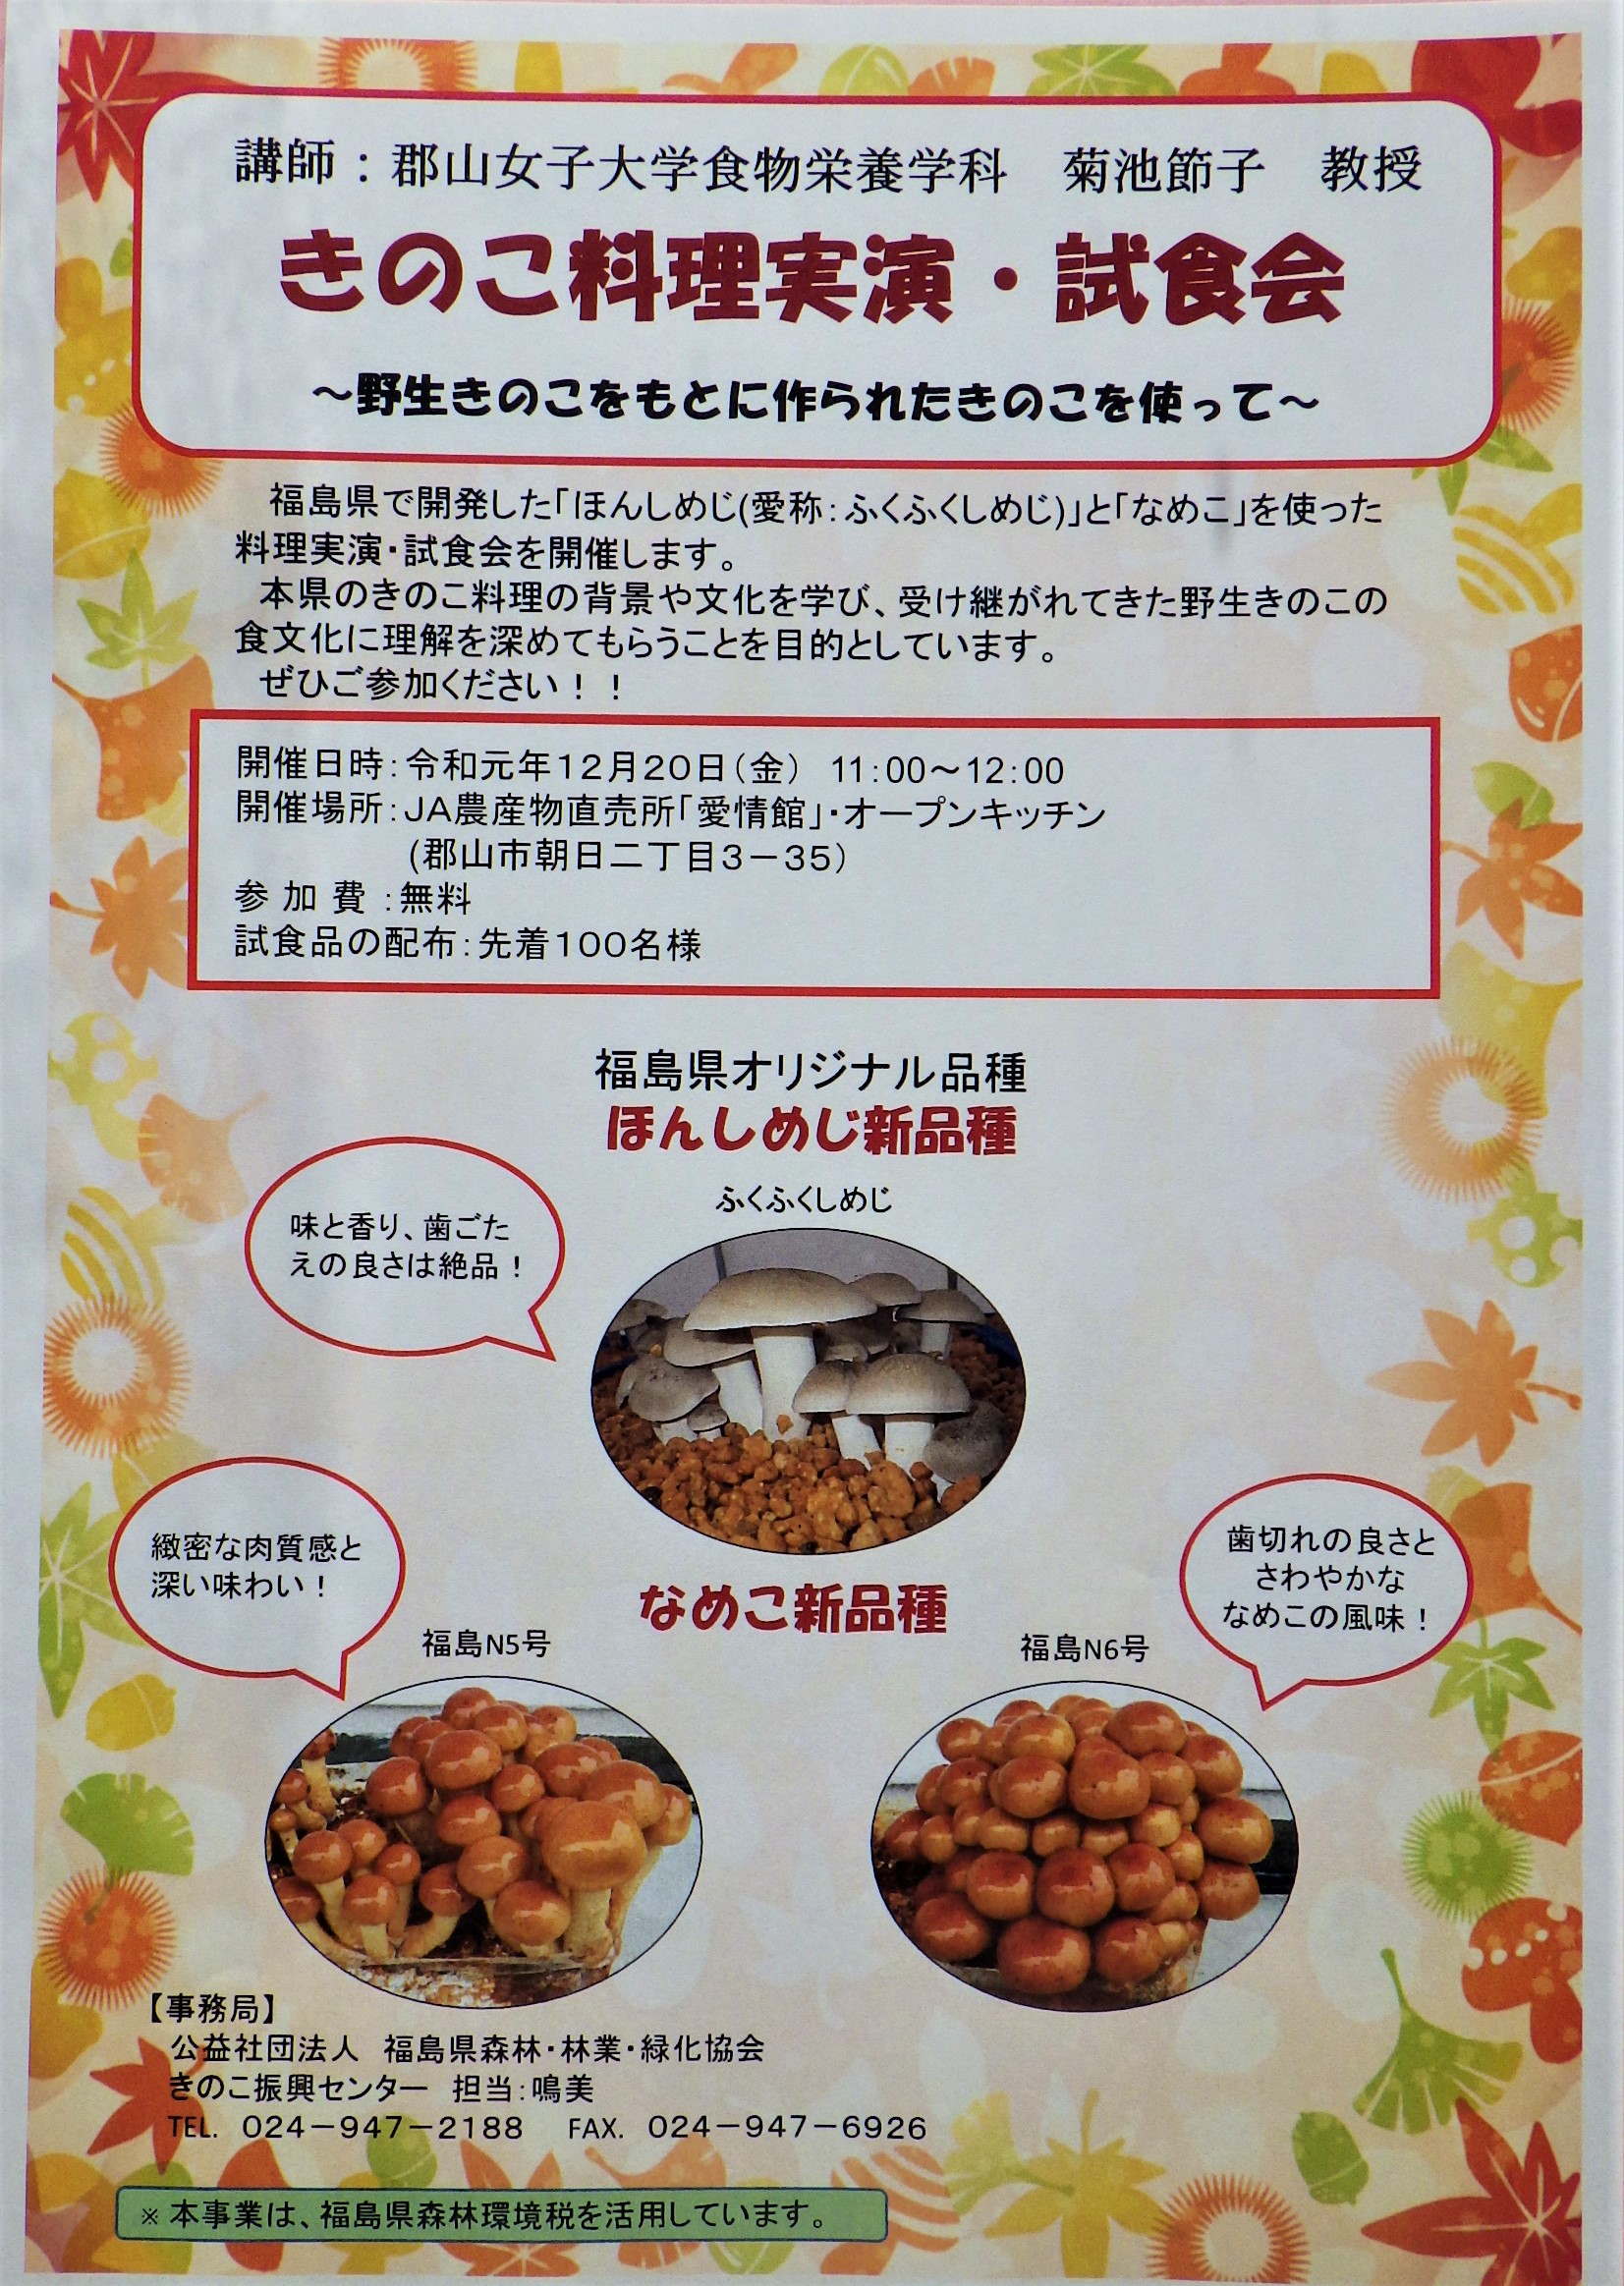 きのこ料理試食会を開催します 公益社団法人福島県森林 林業 緑化協会